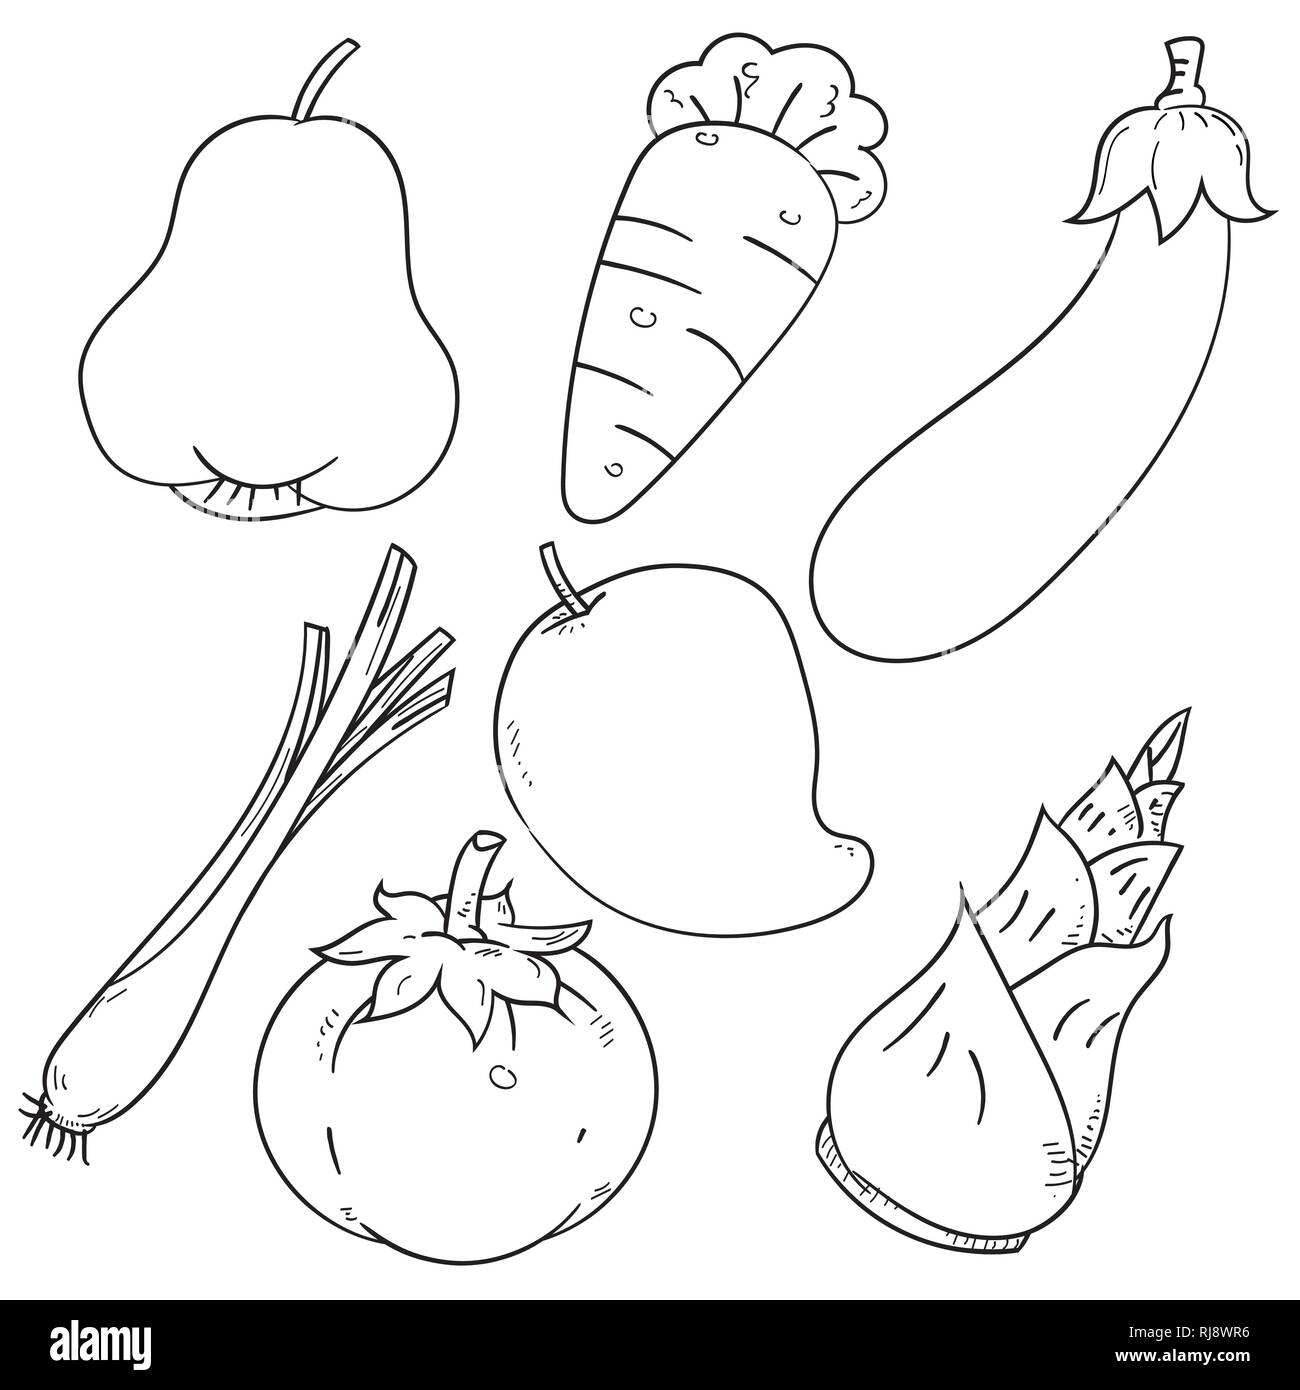 Satz von asiatischen Kräutern und Früchten, auf weißem Hintergrund für Malbuch, Bildung und Nahrung Konzepte isoliert. Einfache Hand gezeichnet Vector Illustration Stock Vektor